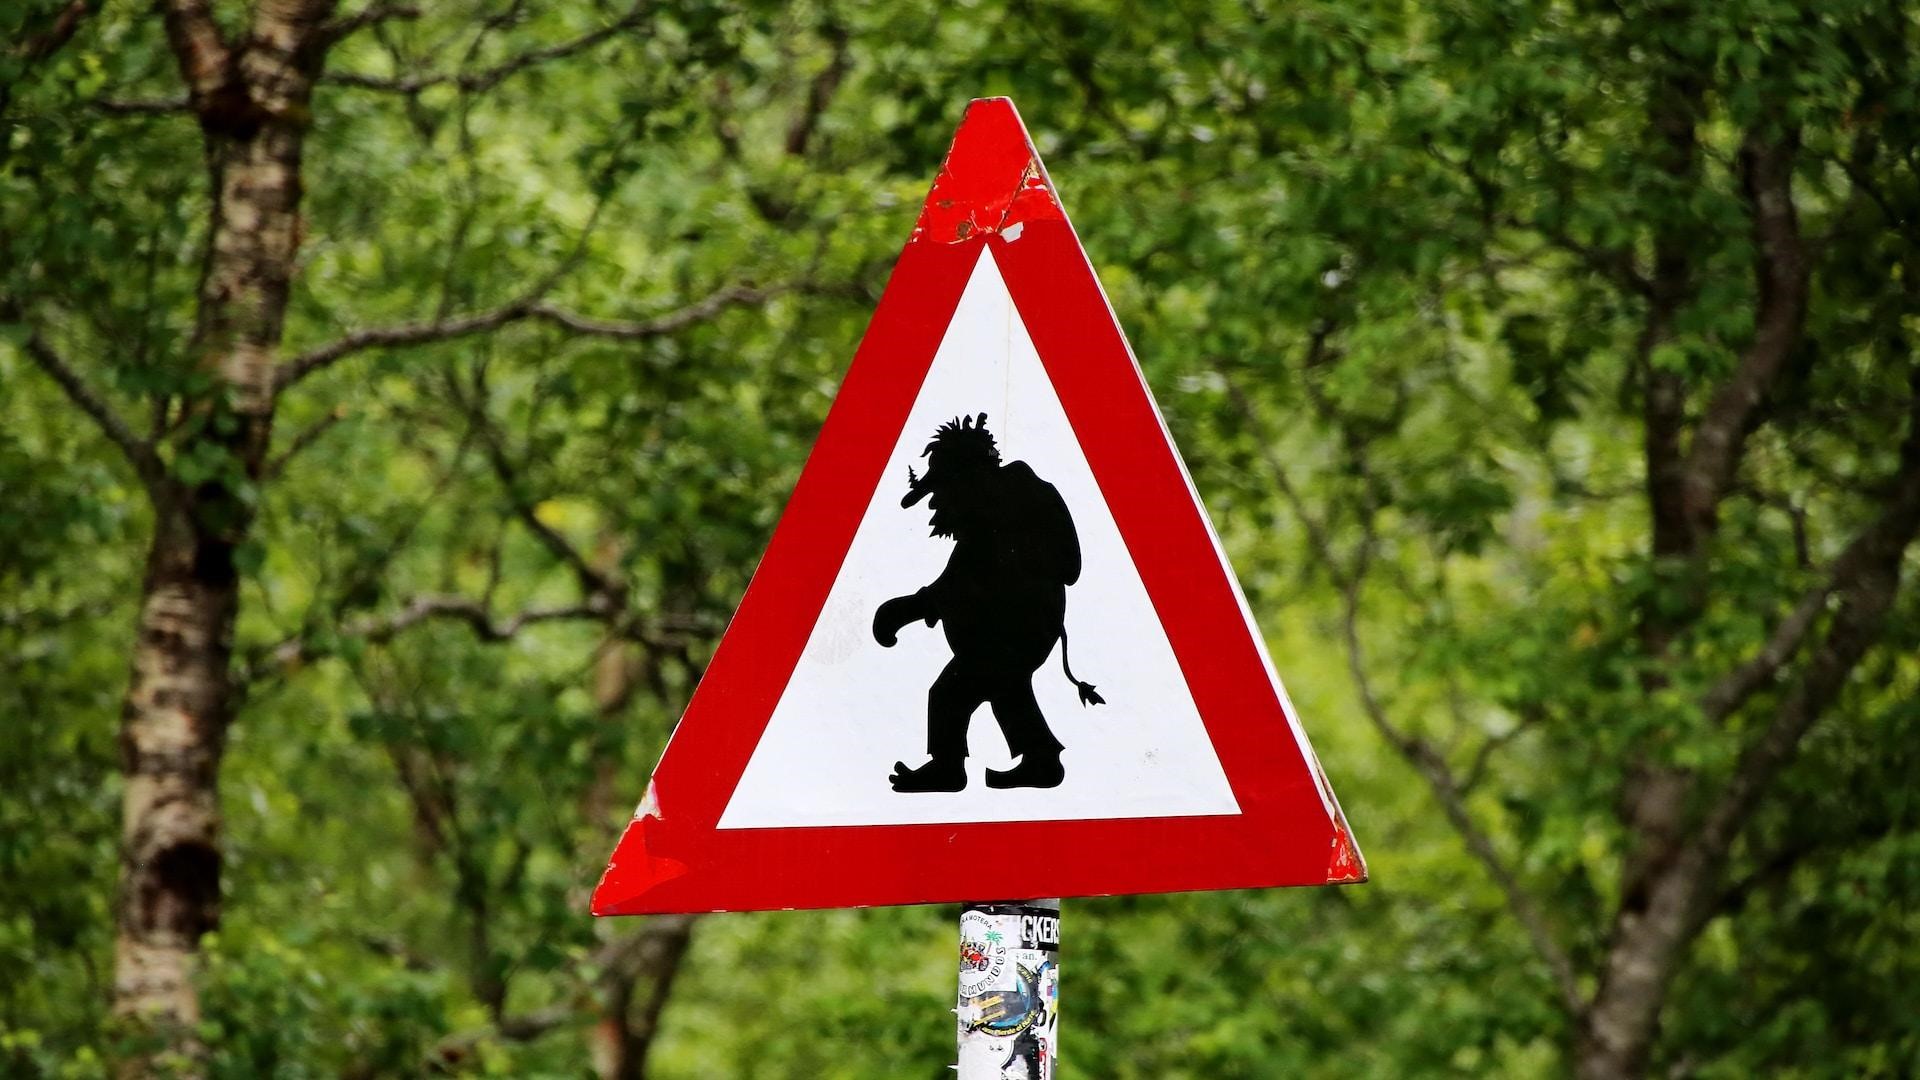 Beware of trolls on the Trollstigen climb